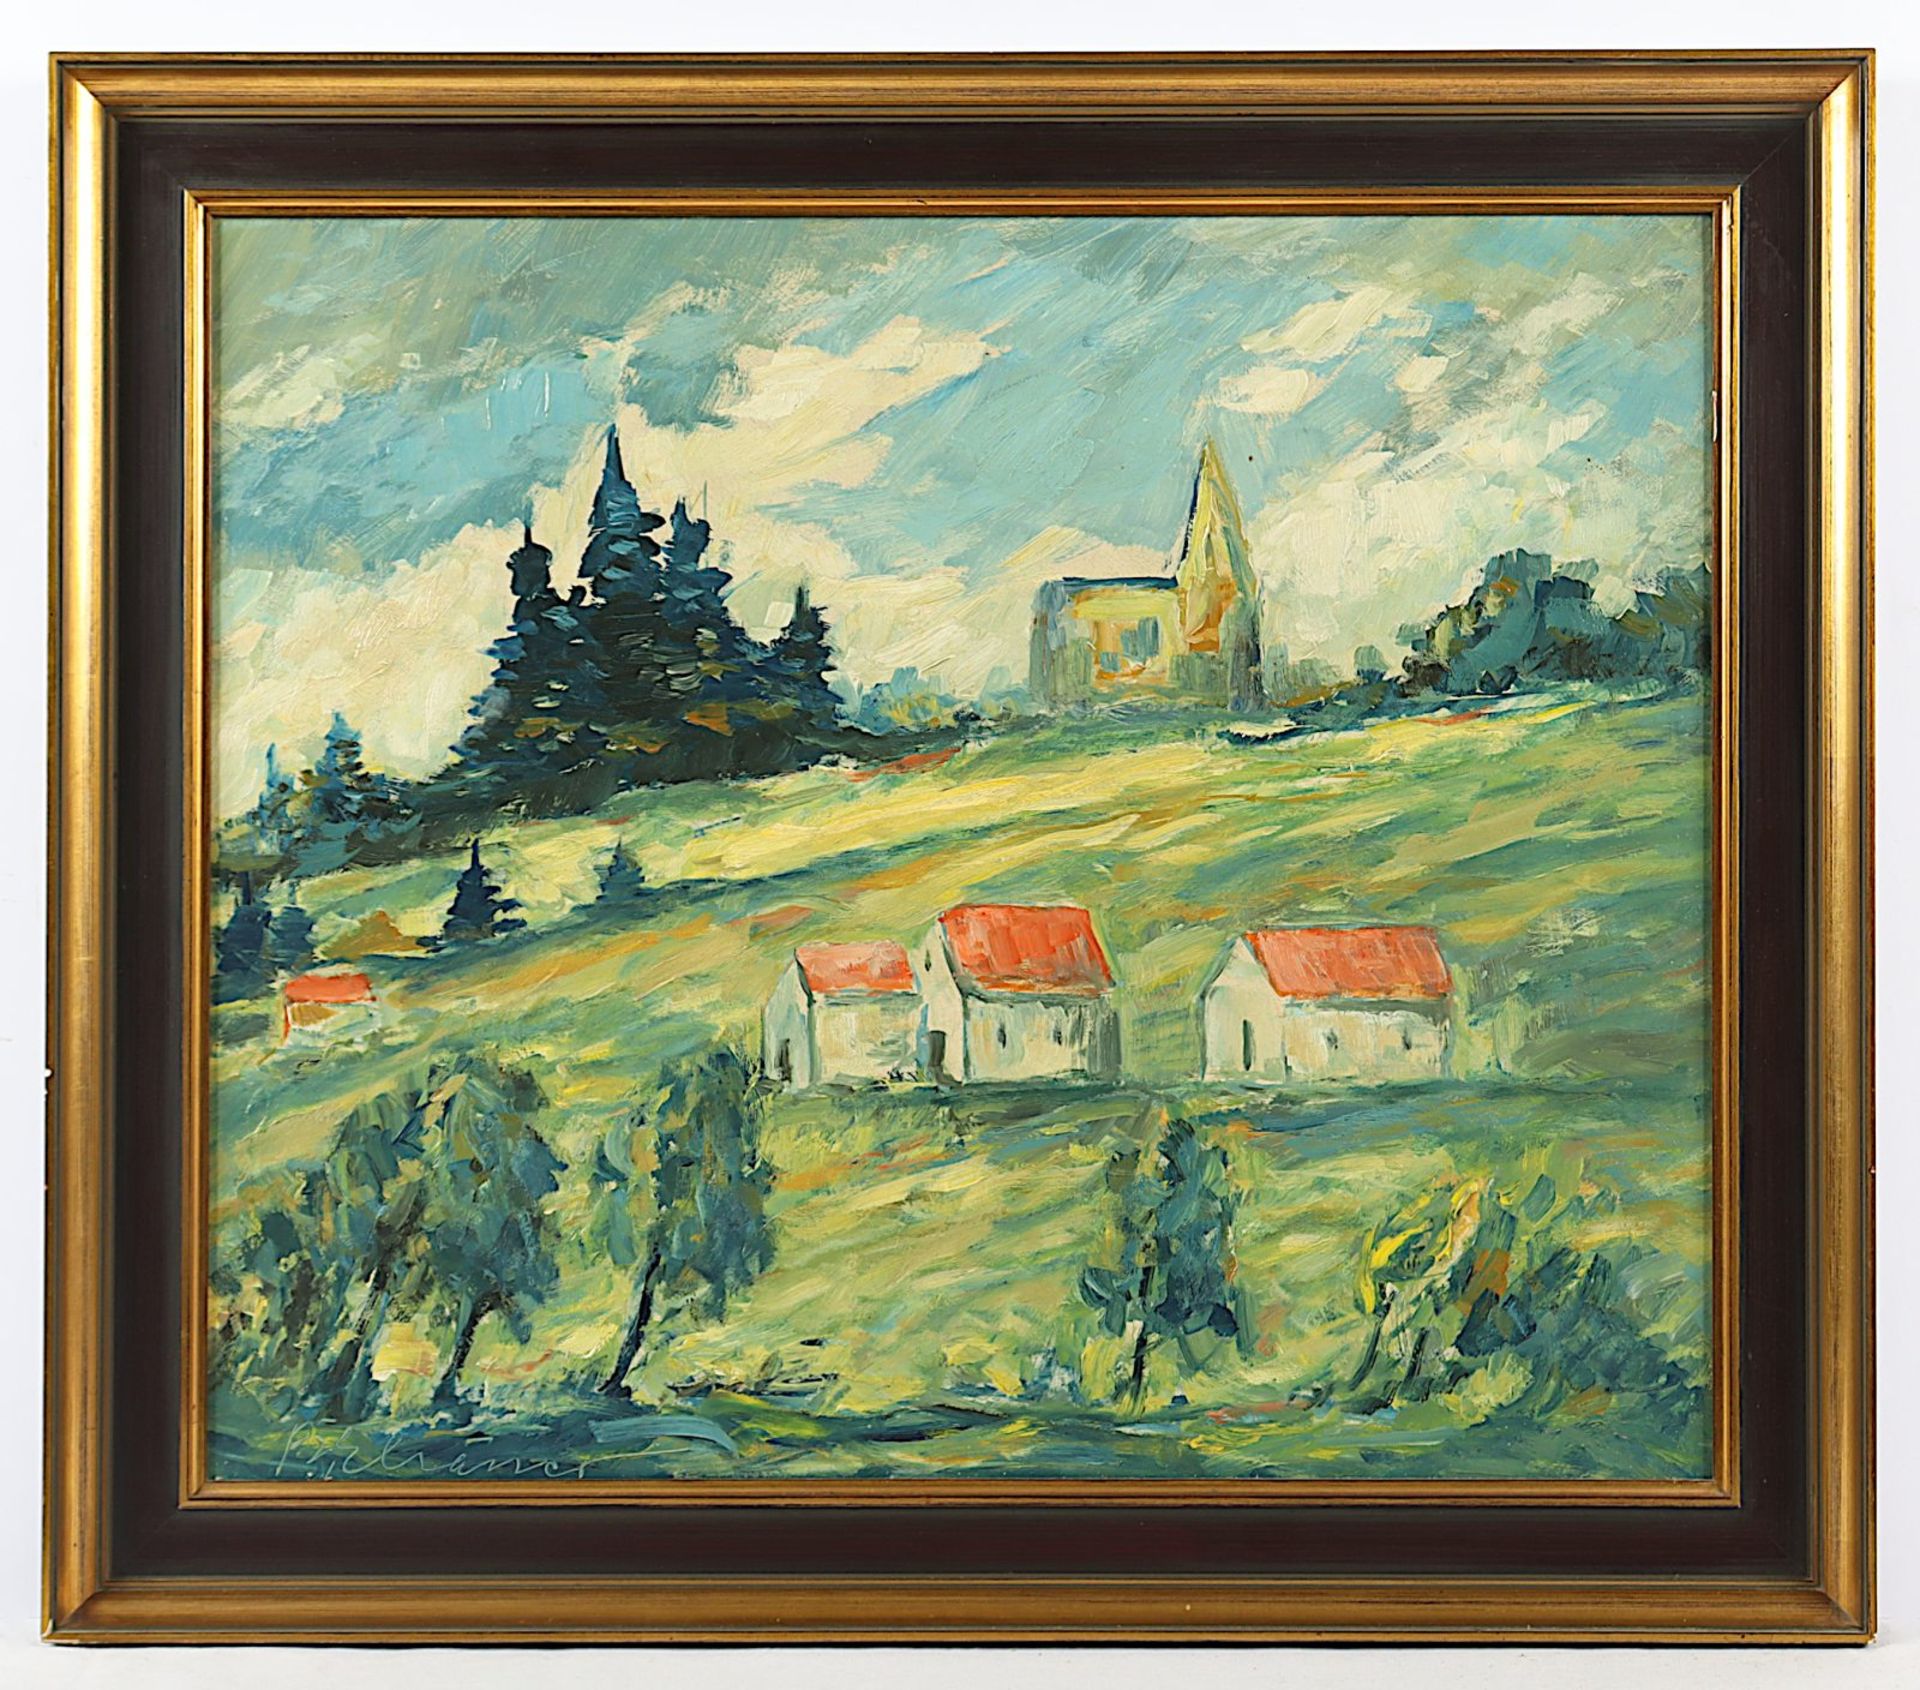 Elsässer, Berthold (1891-1965), "Landschaft mit Dorf", R.